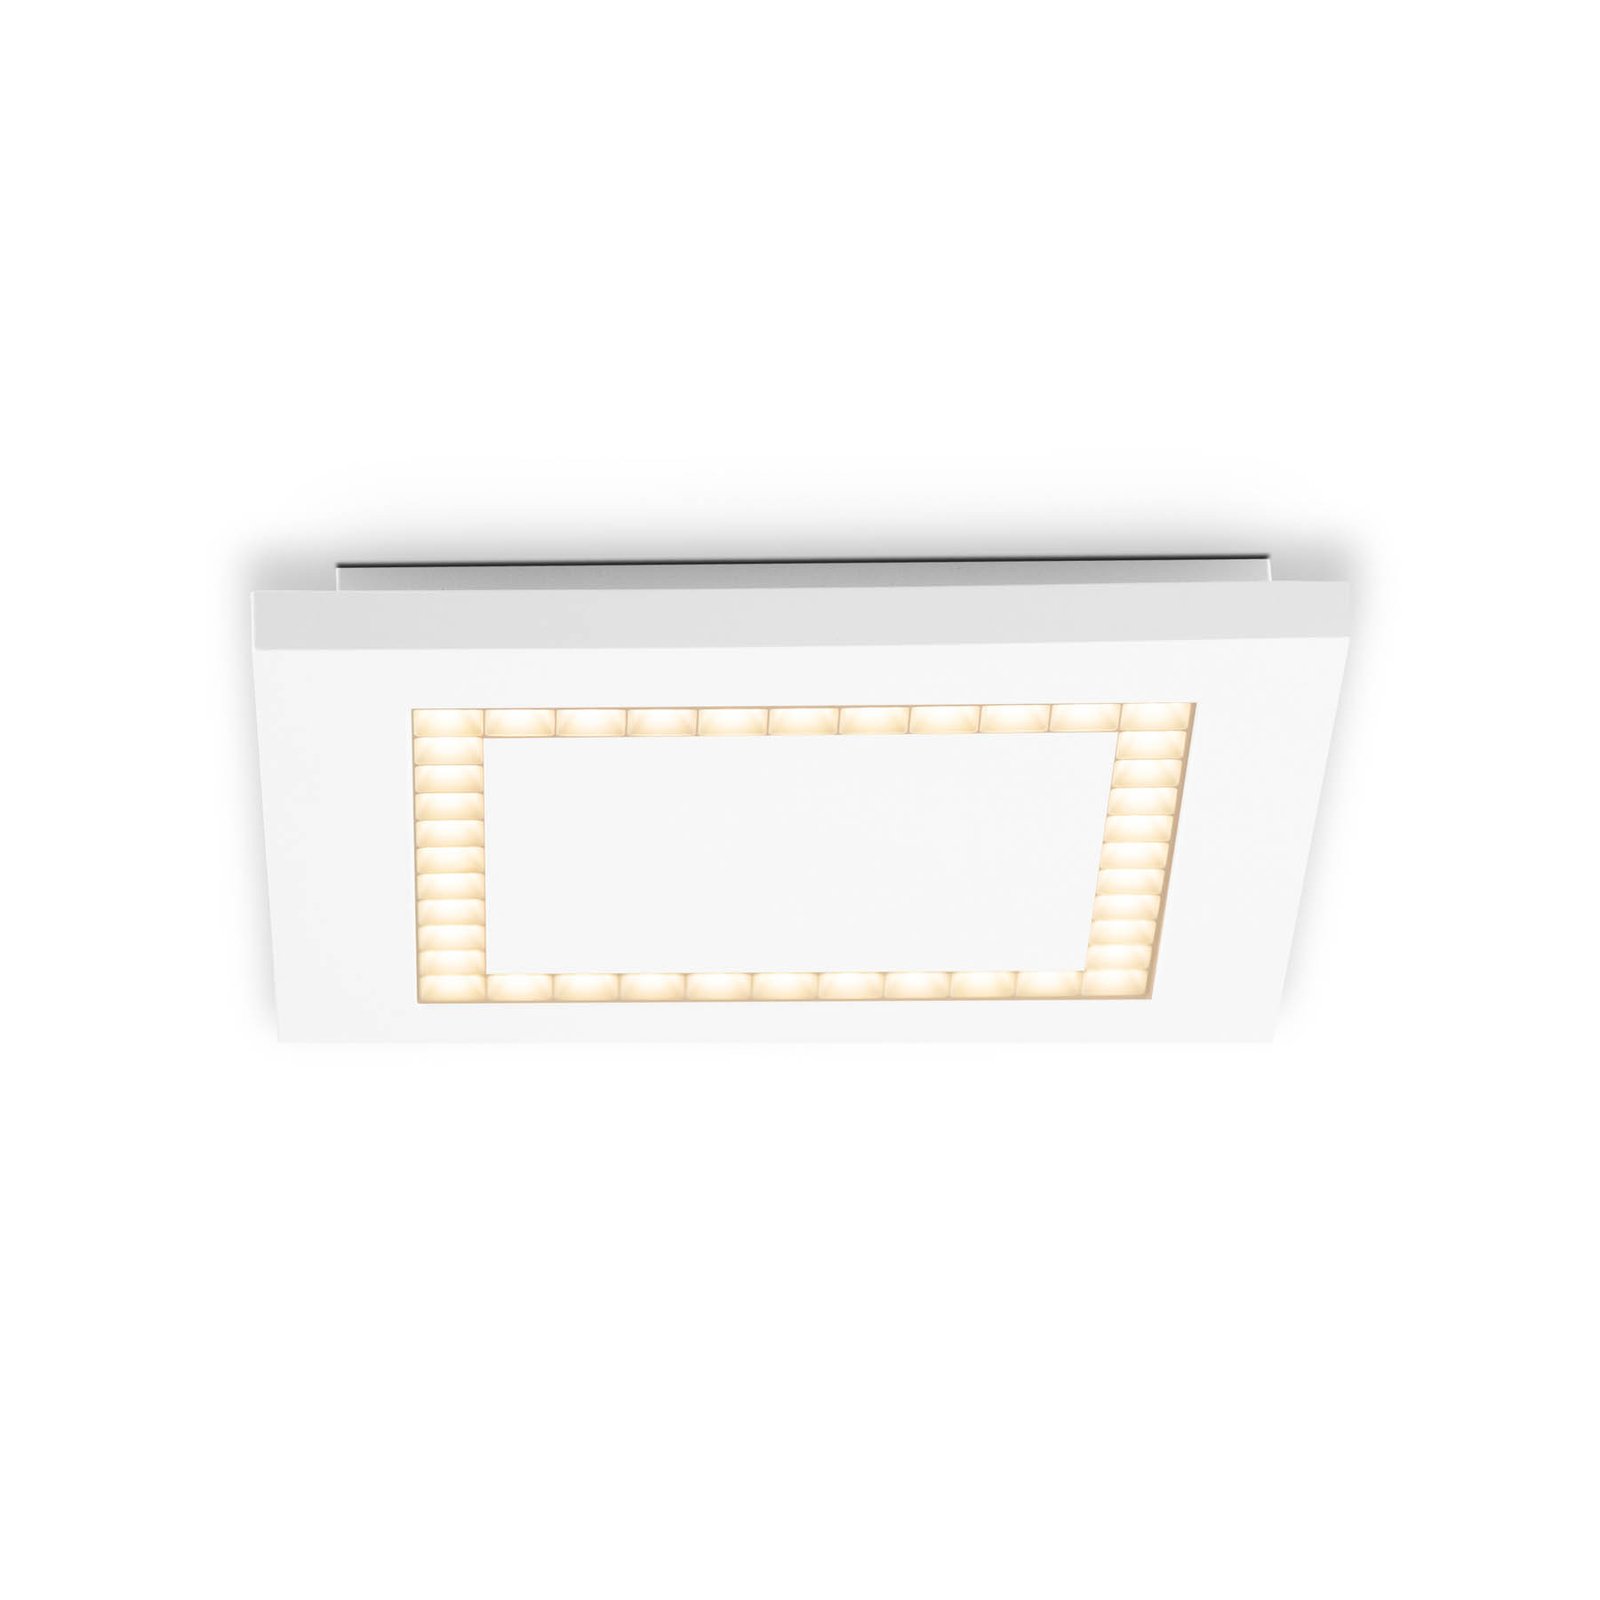 EVN ALQ LED panel white 12 W 25 x 25 cm 3,000 K